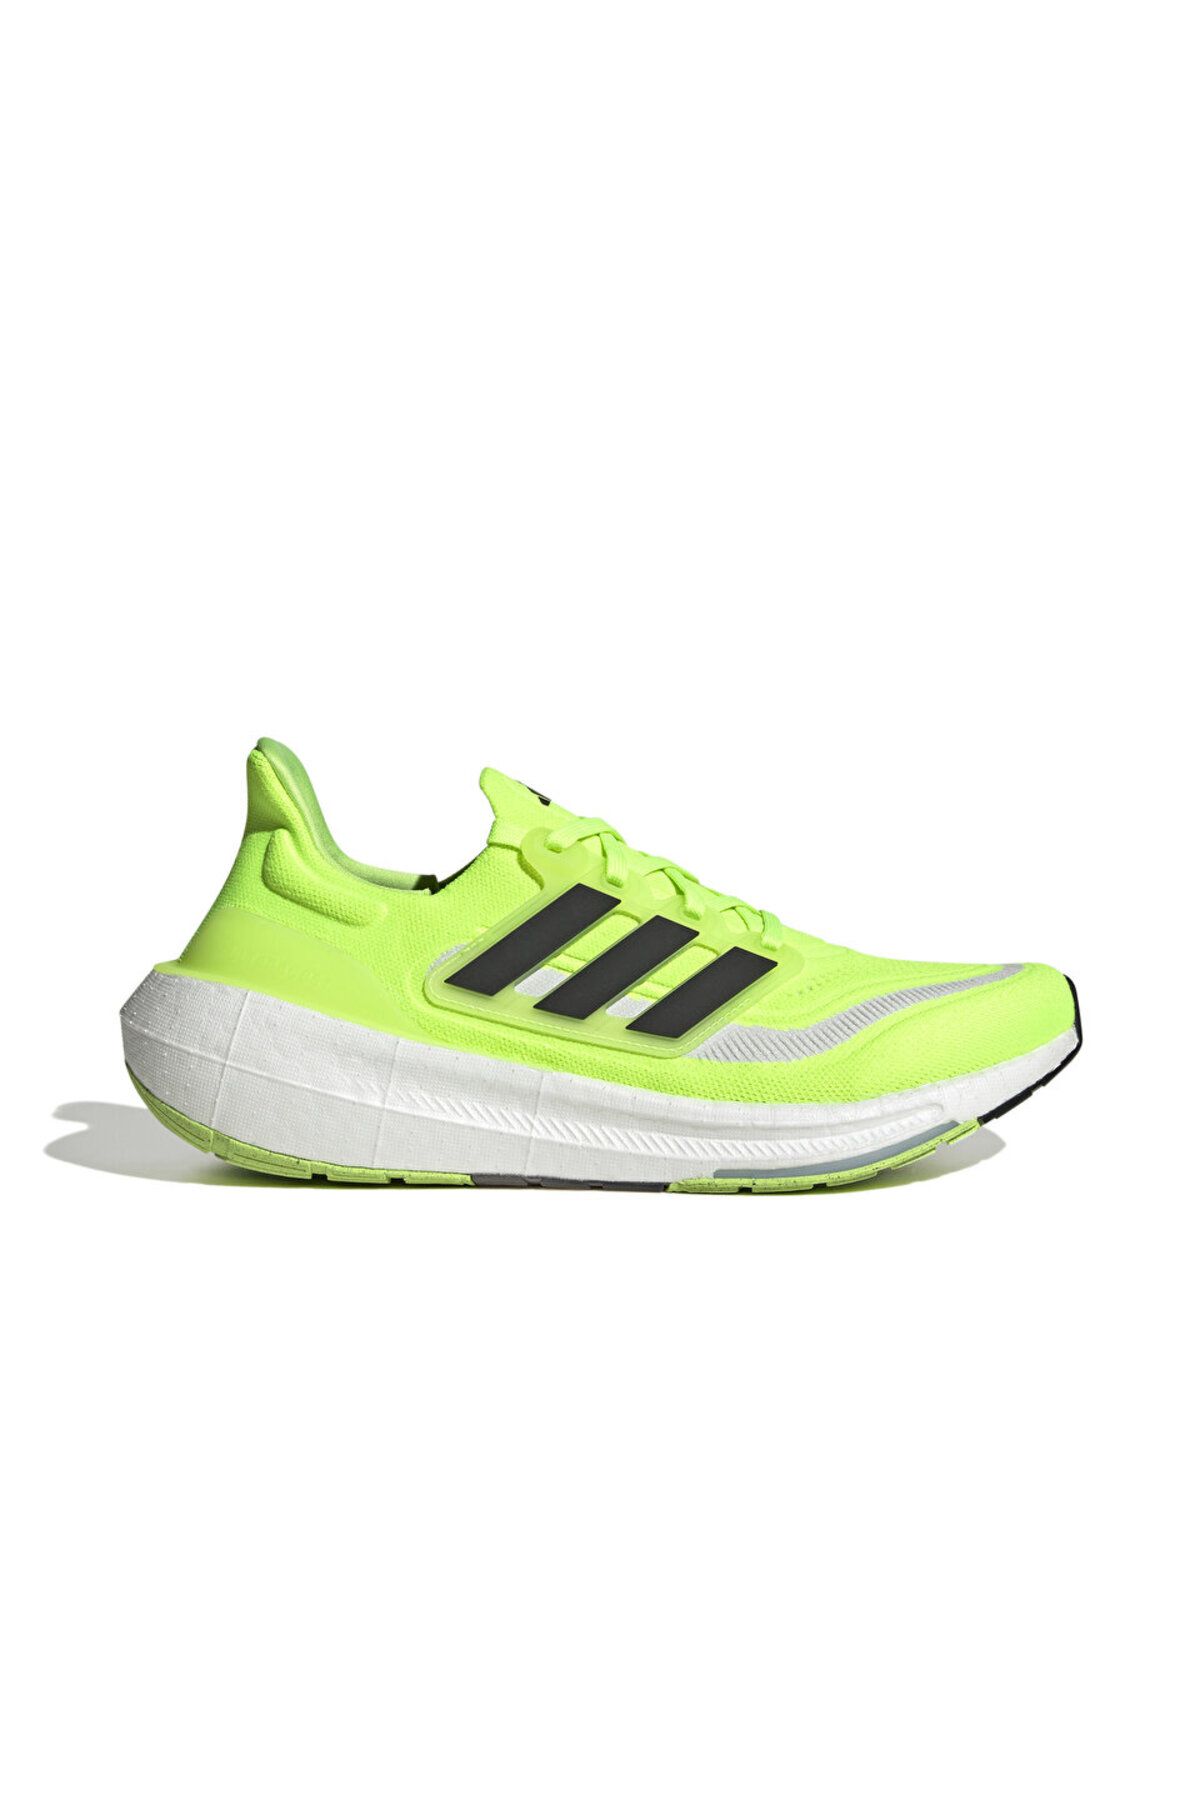 adidas Ultraboost Light Erkek Koşu Ayakkabısı IE1767 Yeşil